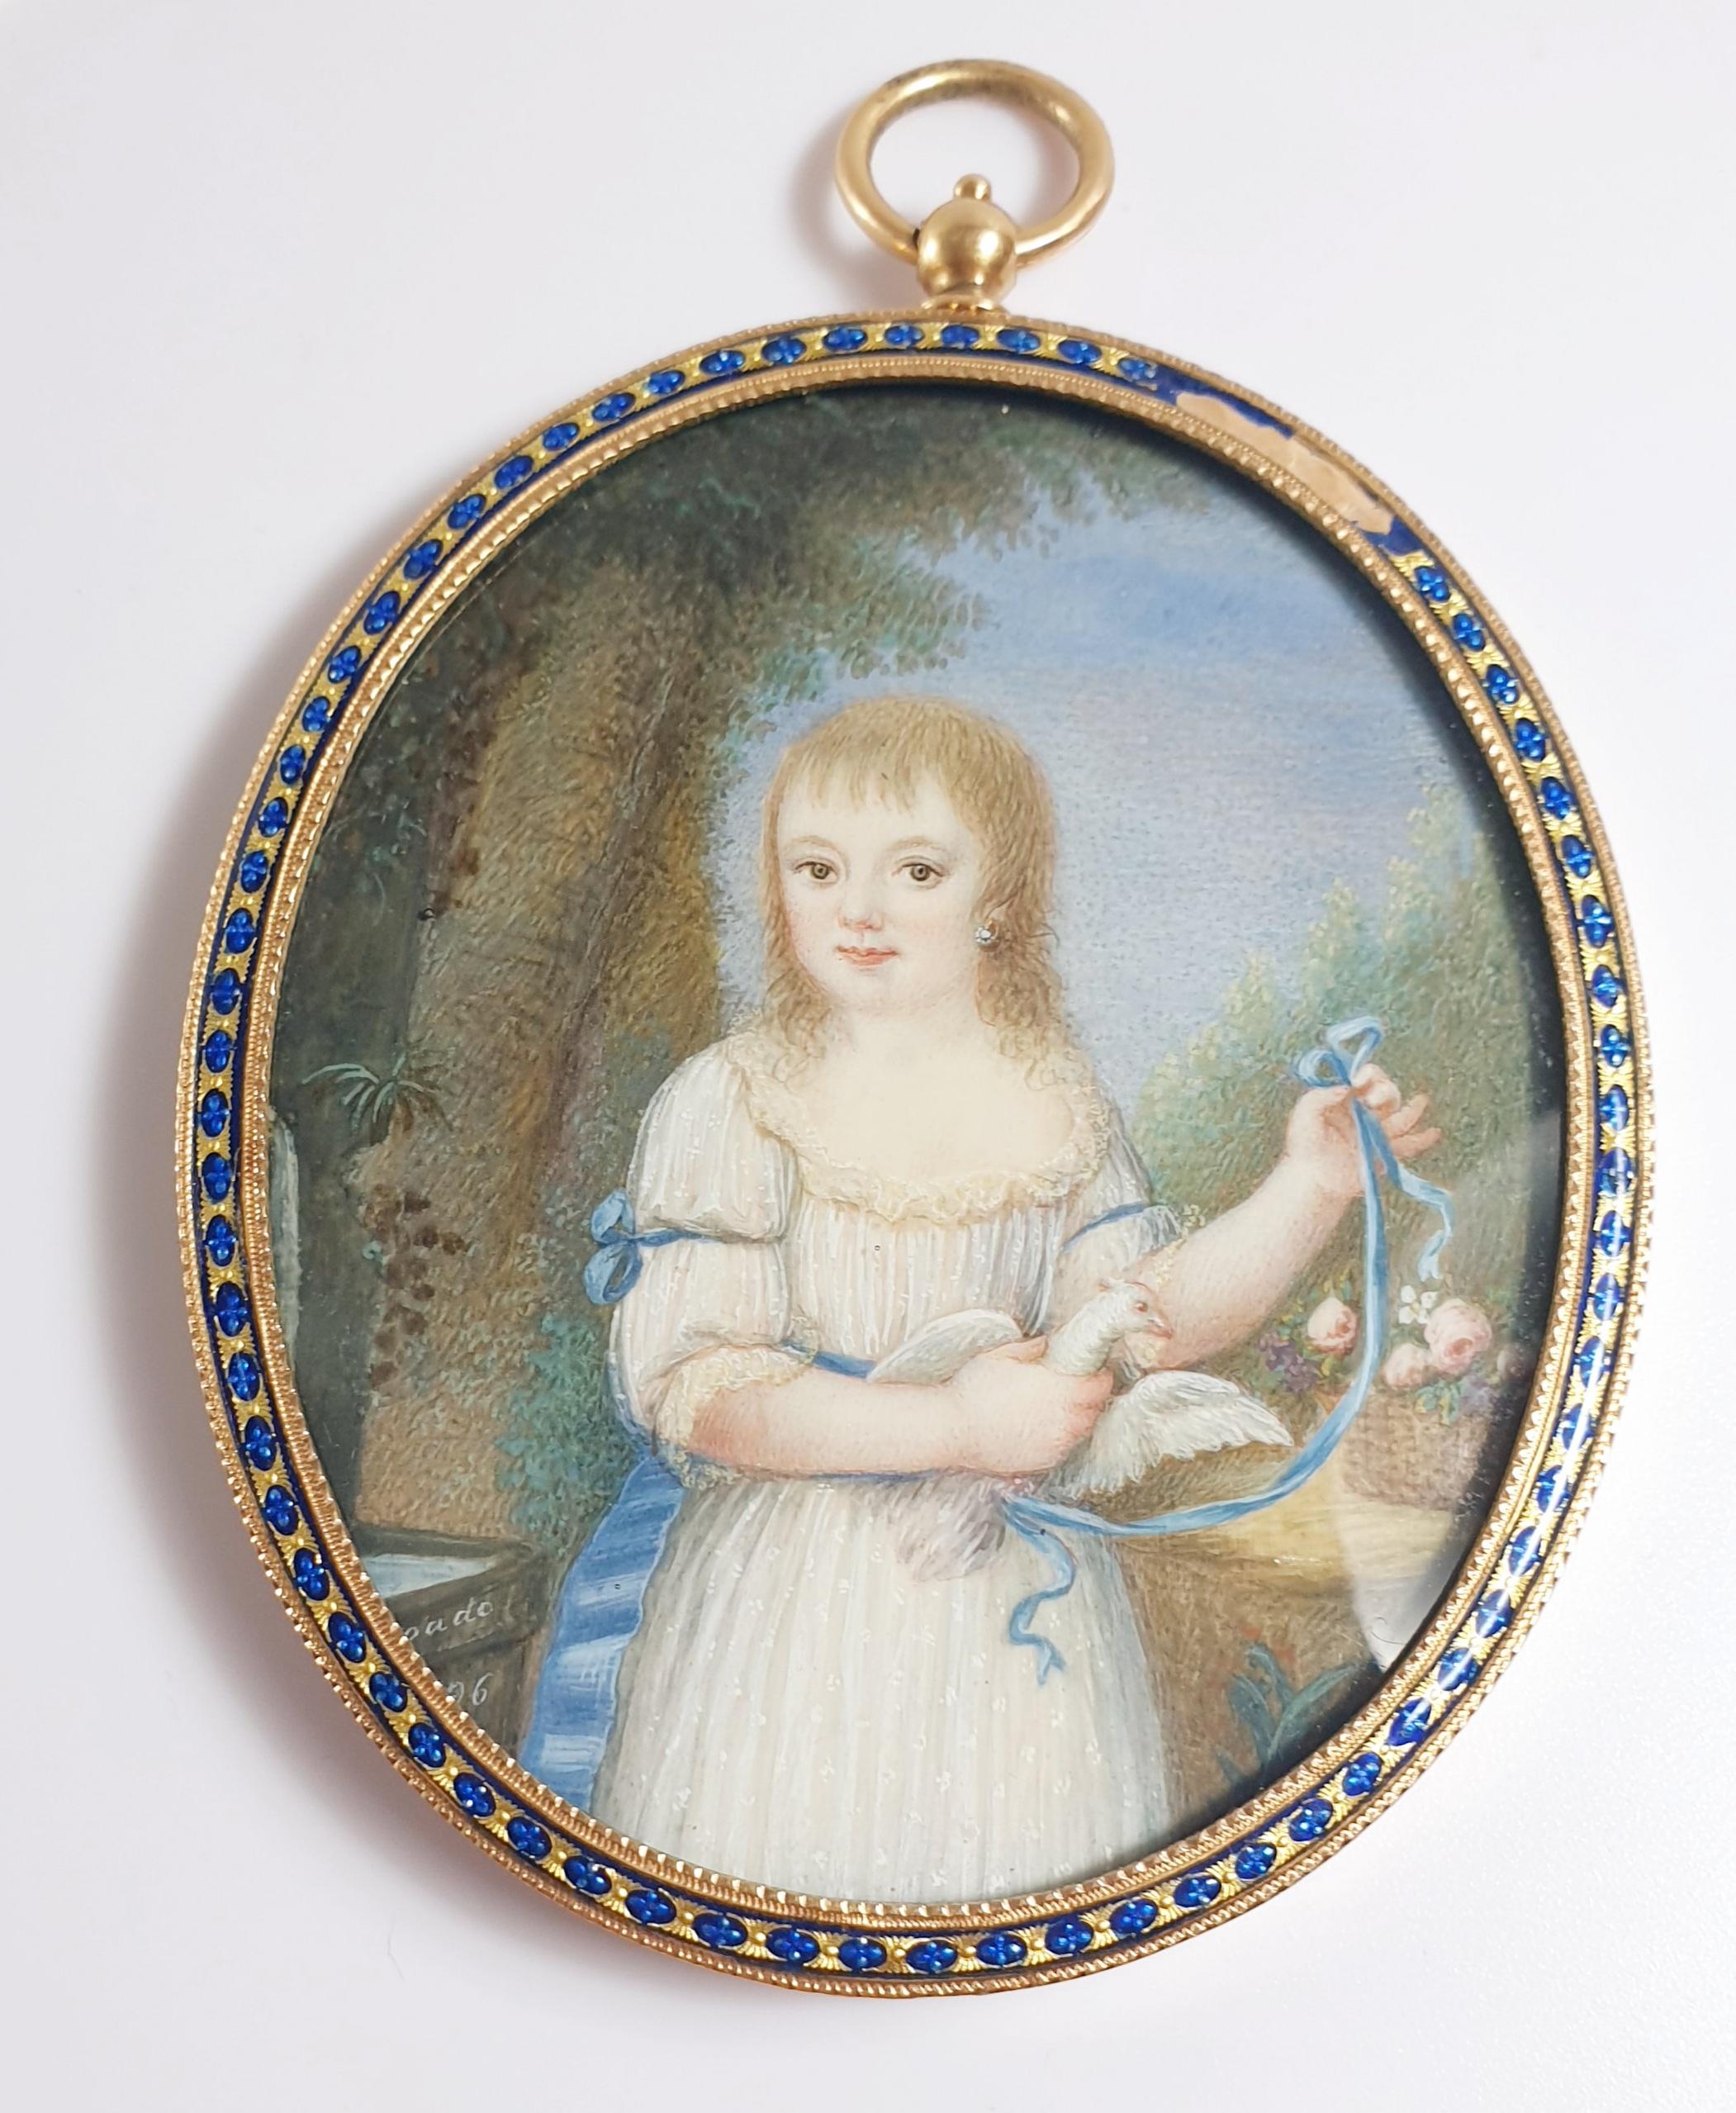 Ovaler Fotorahmen-Anhänger des XIX. Jahrhunderts aus Gelbgold mit blauen Emaille-Verzierungen.
Im Inneren eine Miniatur eines kleinen Mädchens mit einer Taube, einem Blumenkorb und einer Schleife.
Maßnahmen:
90x64mm / 3.54x2.51in.

VERSANDFÄHIG
*Der